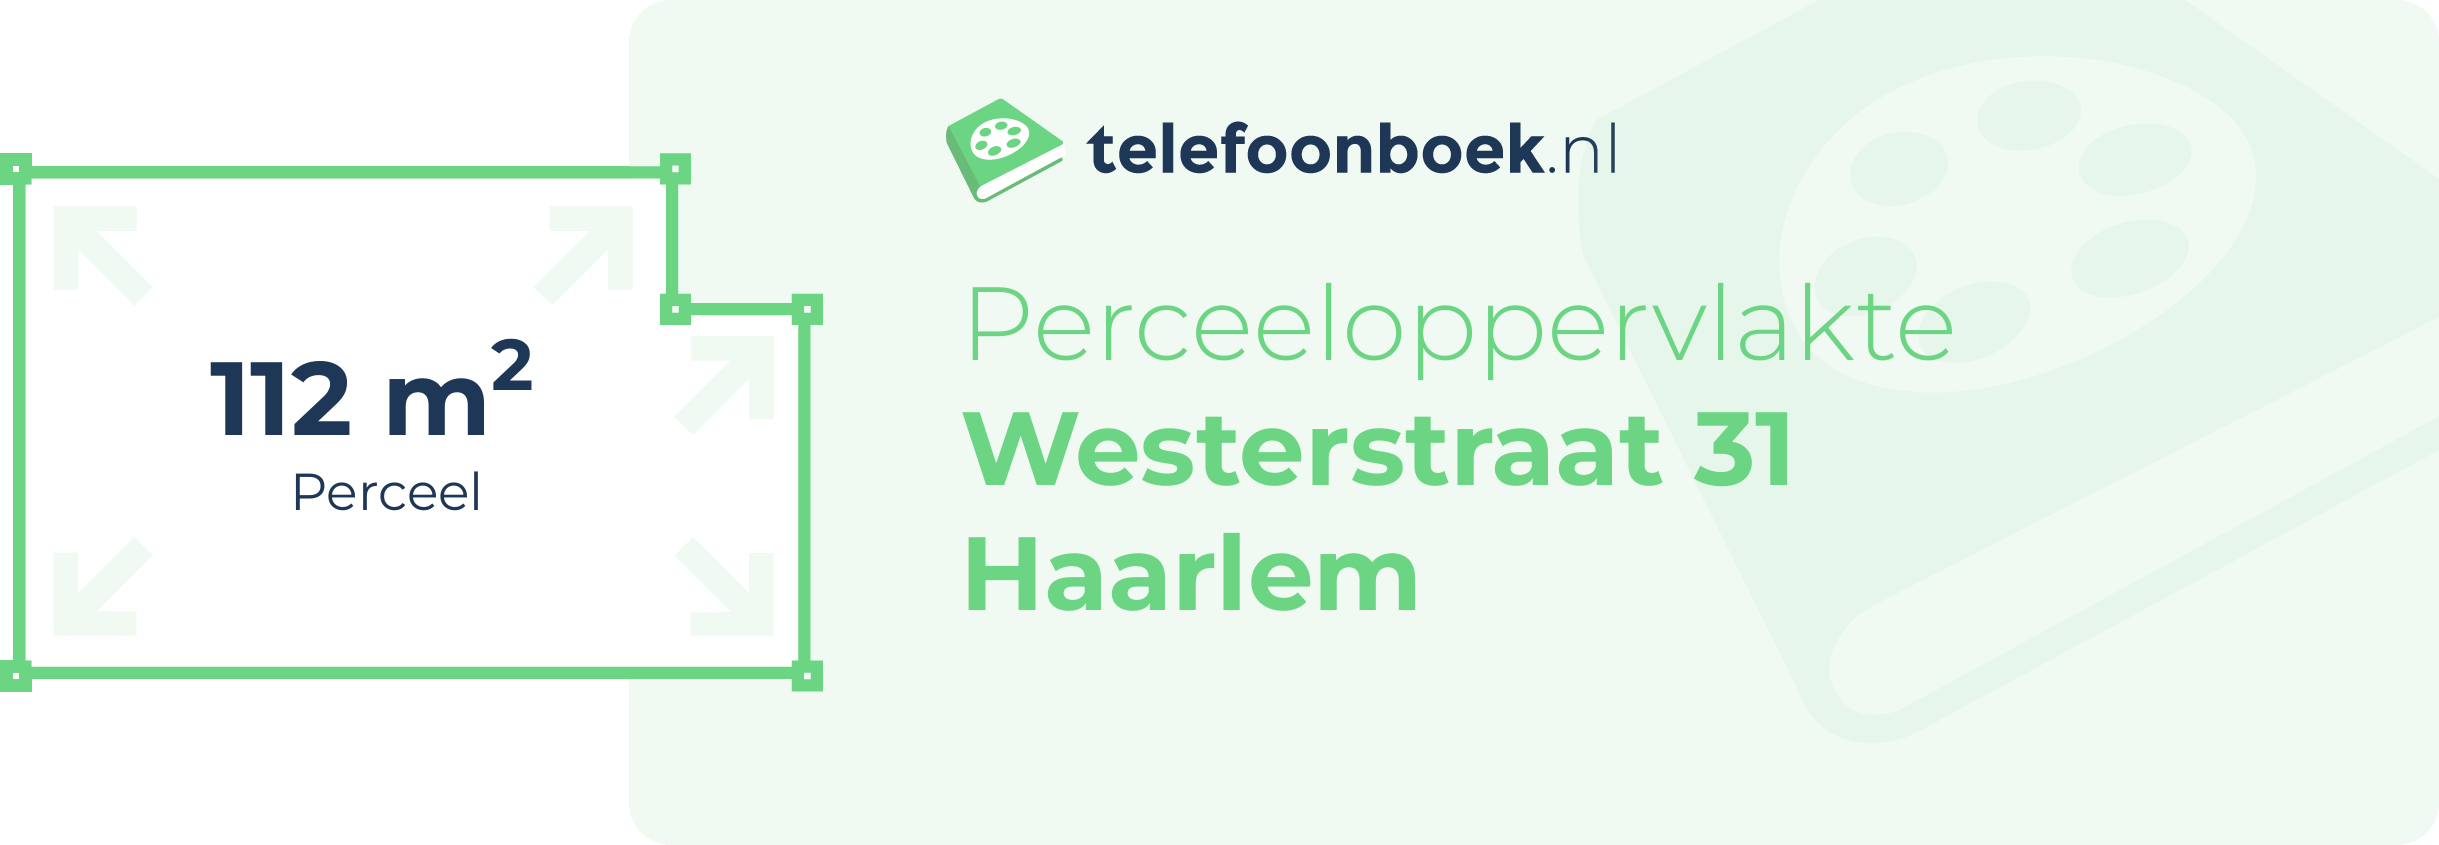 Perceeloppervlakte Westerstraat 31 Haarlem